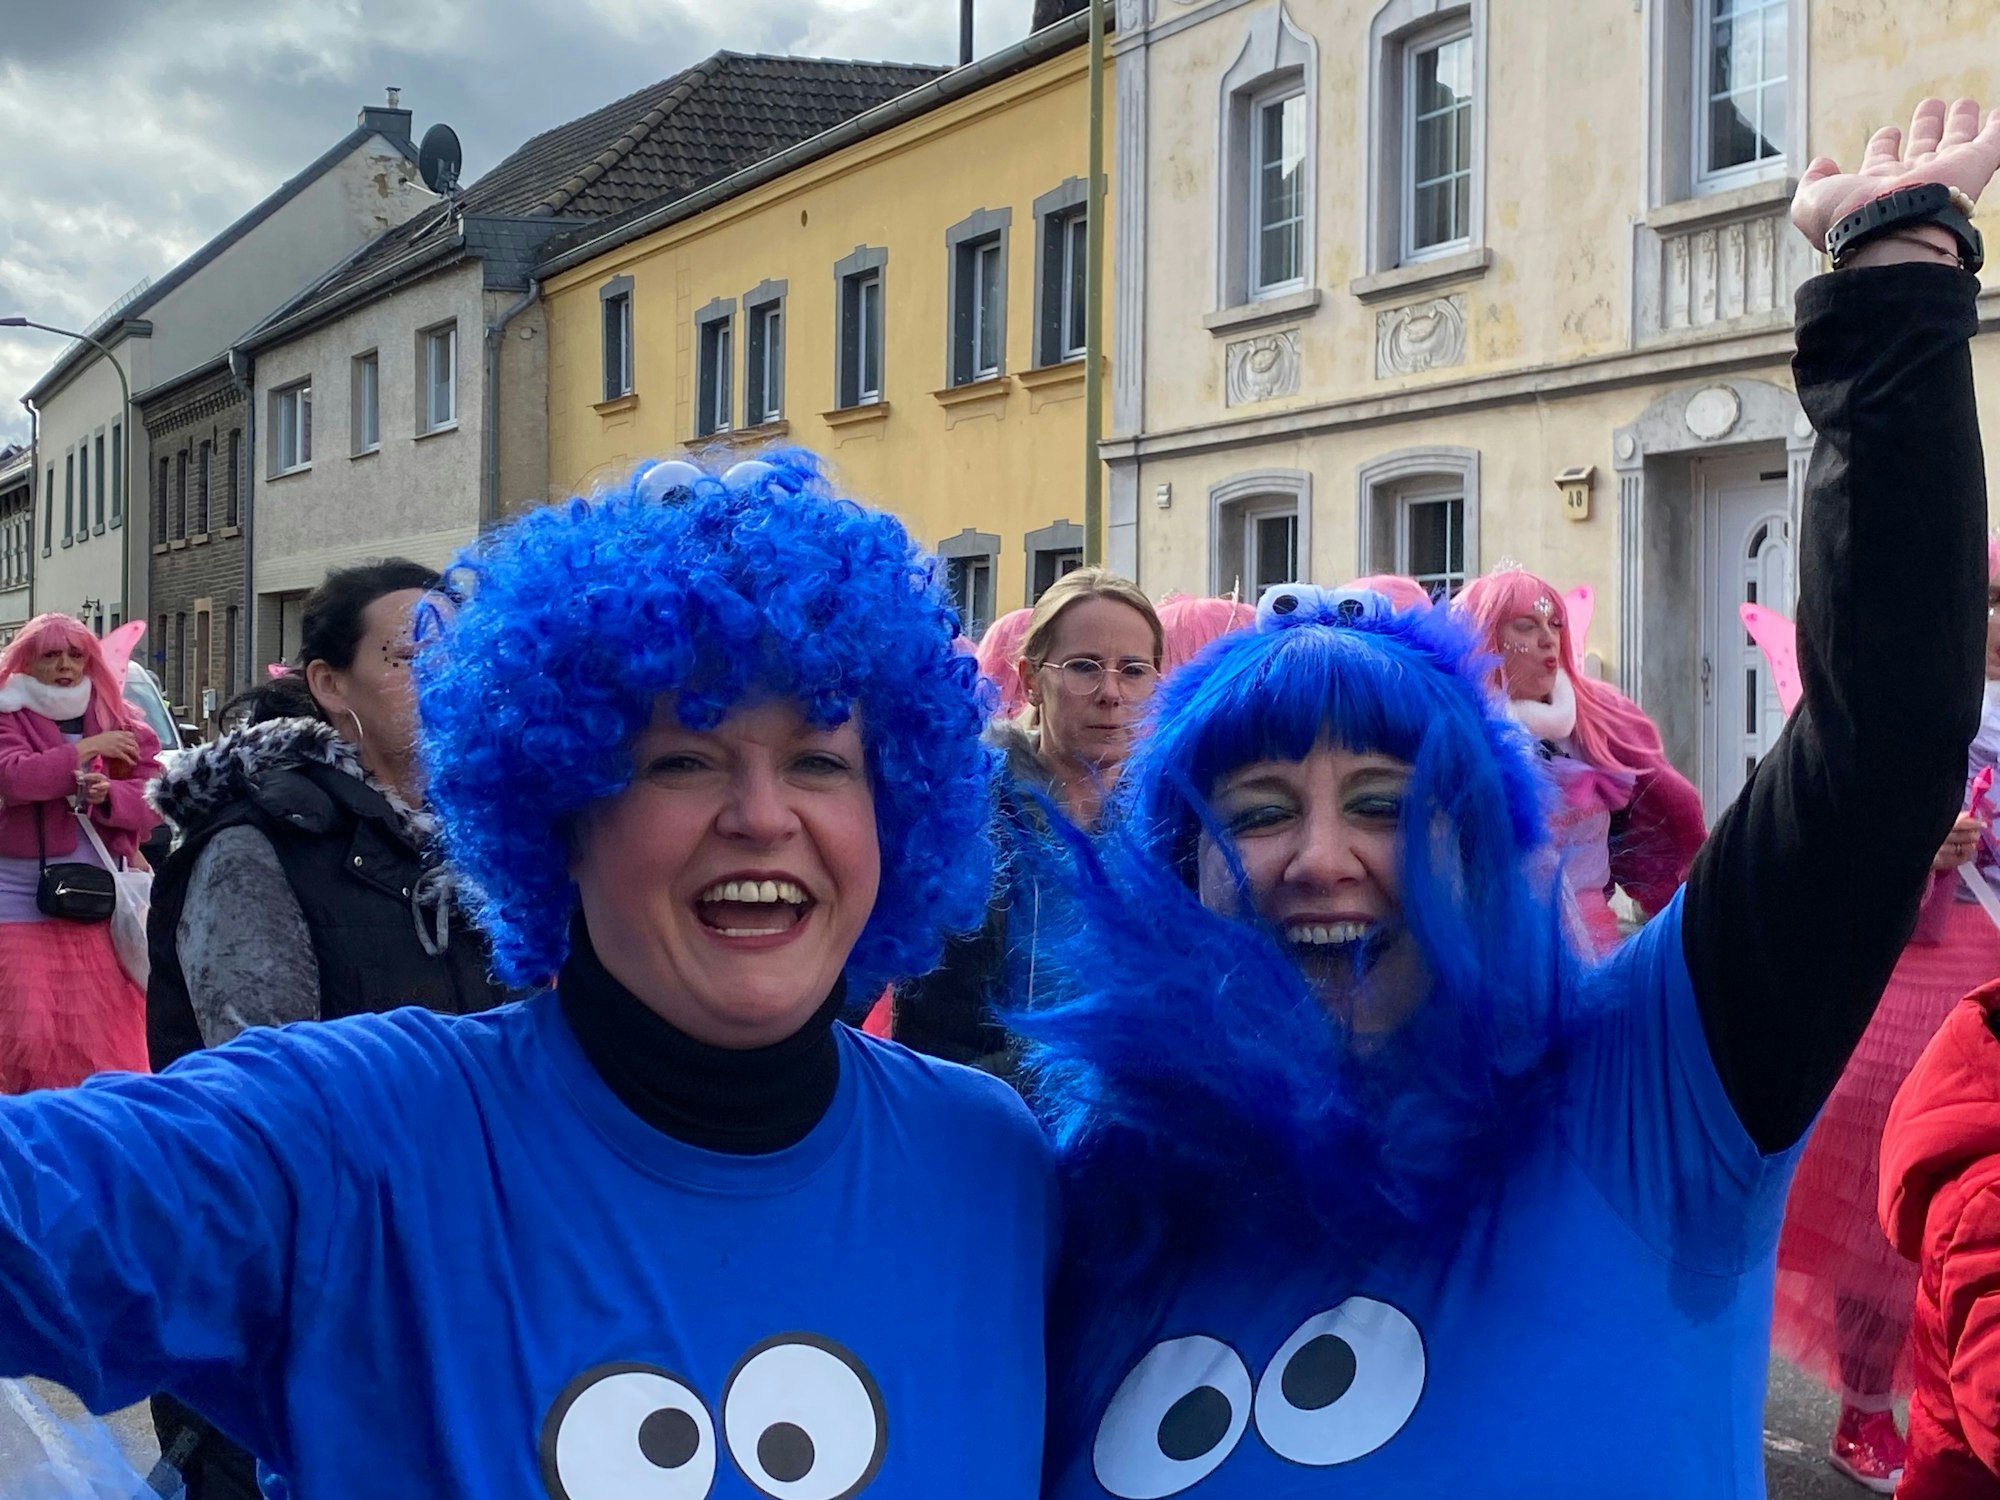 Die Freundinnen Angelika Auer und Verena Stradza sehen sich nicht oft, weil Angelika inzwischen am Bodensee lebt, aber an Karneval suchen sie immer ein gemeinsames Kostüm. In diesem Jahr: Das Krümelmonster.